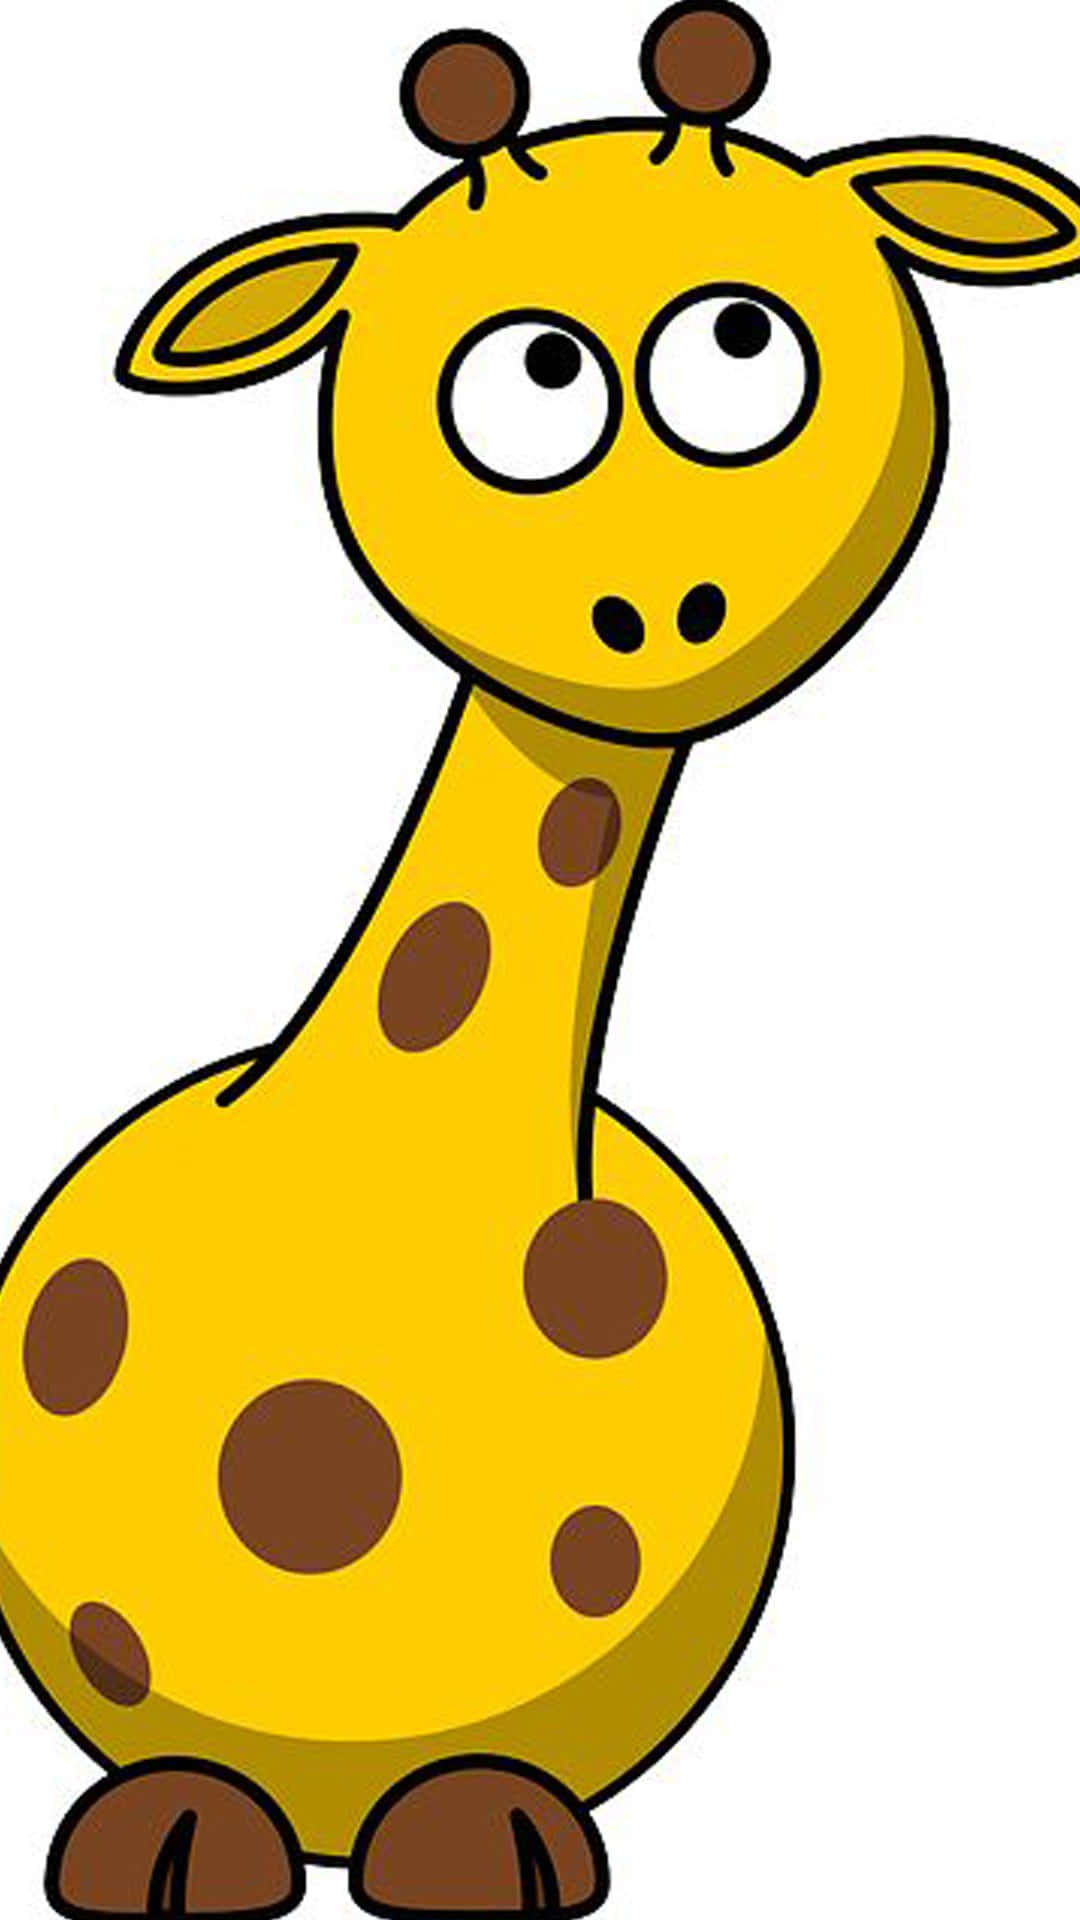 Enstund Av Reflektion -- Baby Giraff